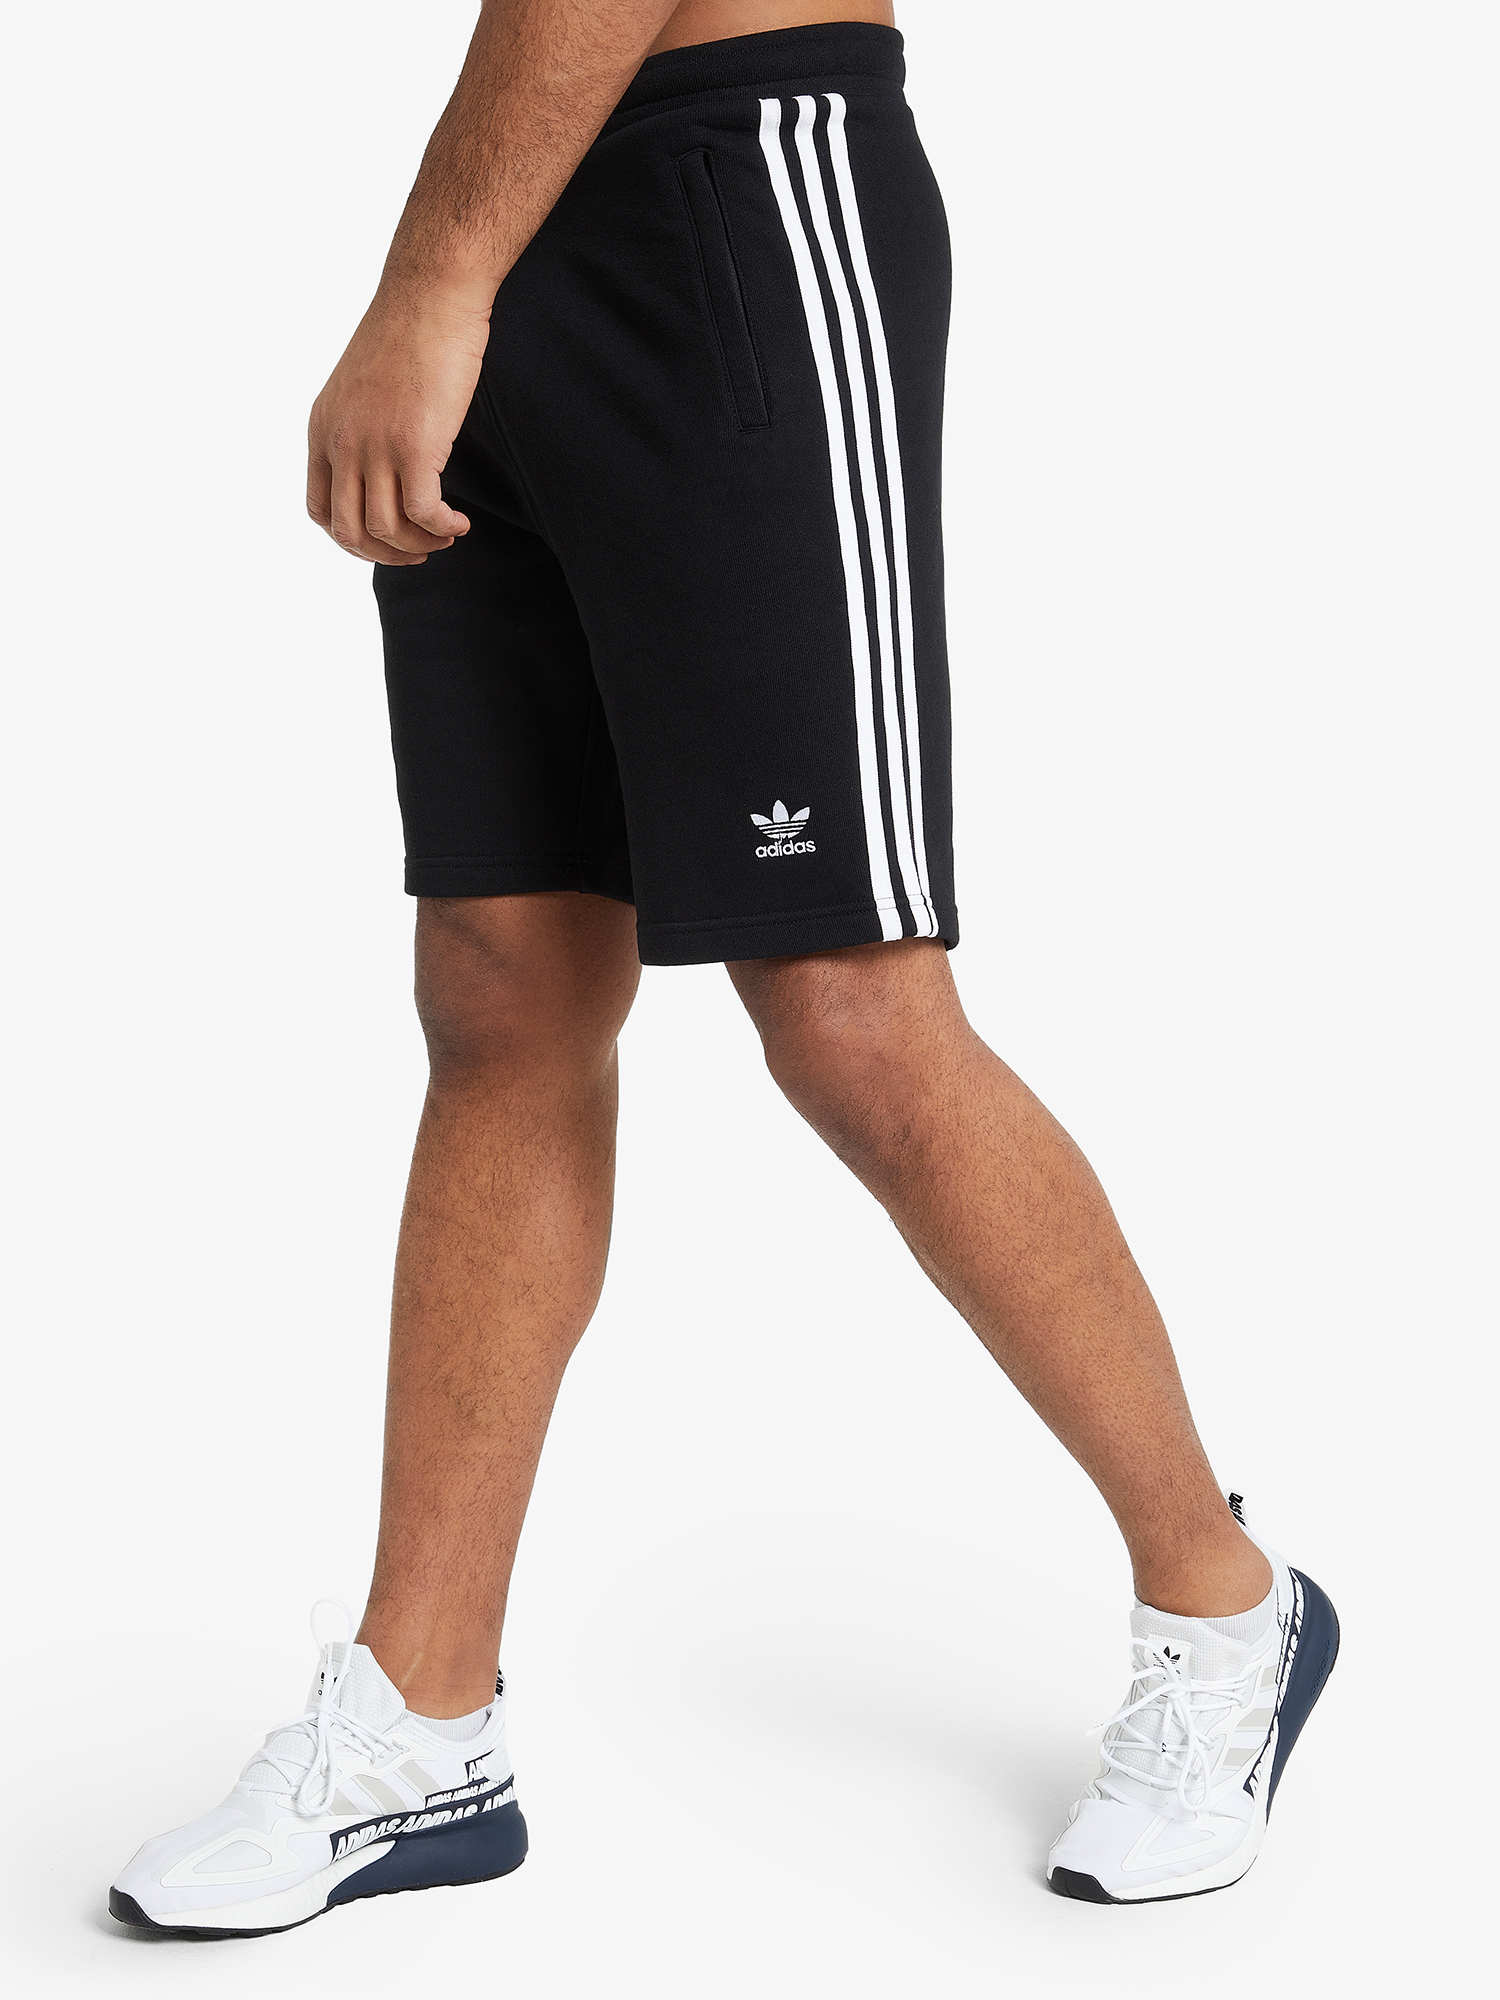 Шорты мужские adidas 3-Stripes, Черный playtoday юбка шорты трикотажные для девочки stripes